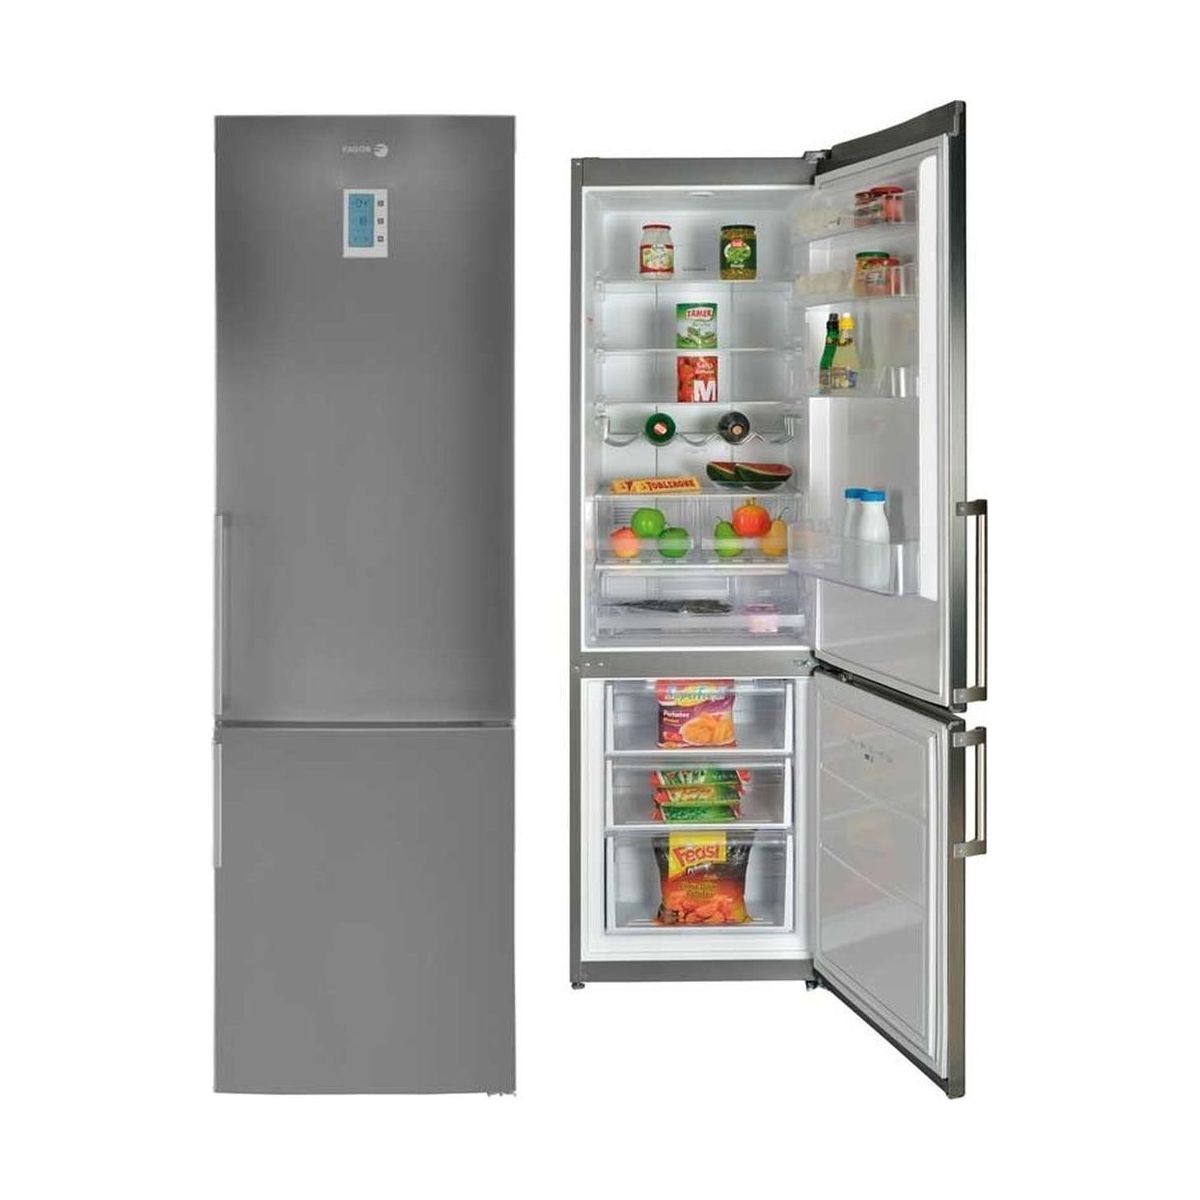 Tủ lạnh Fagor 350 lít FFK6835AX